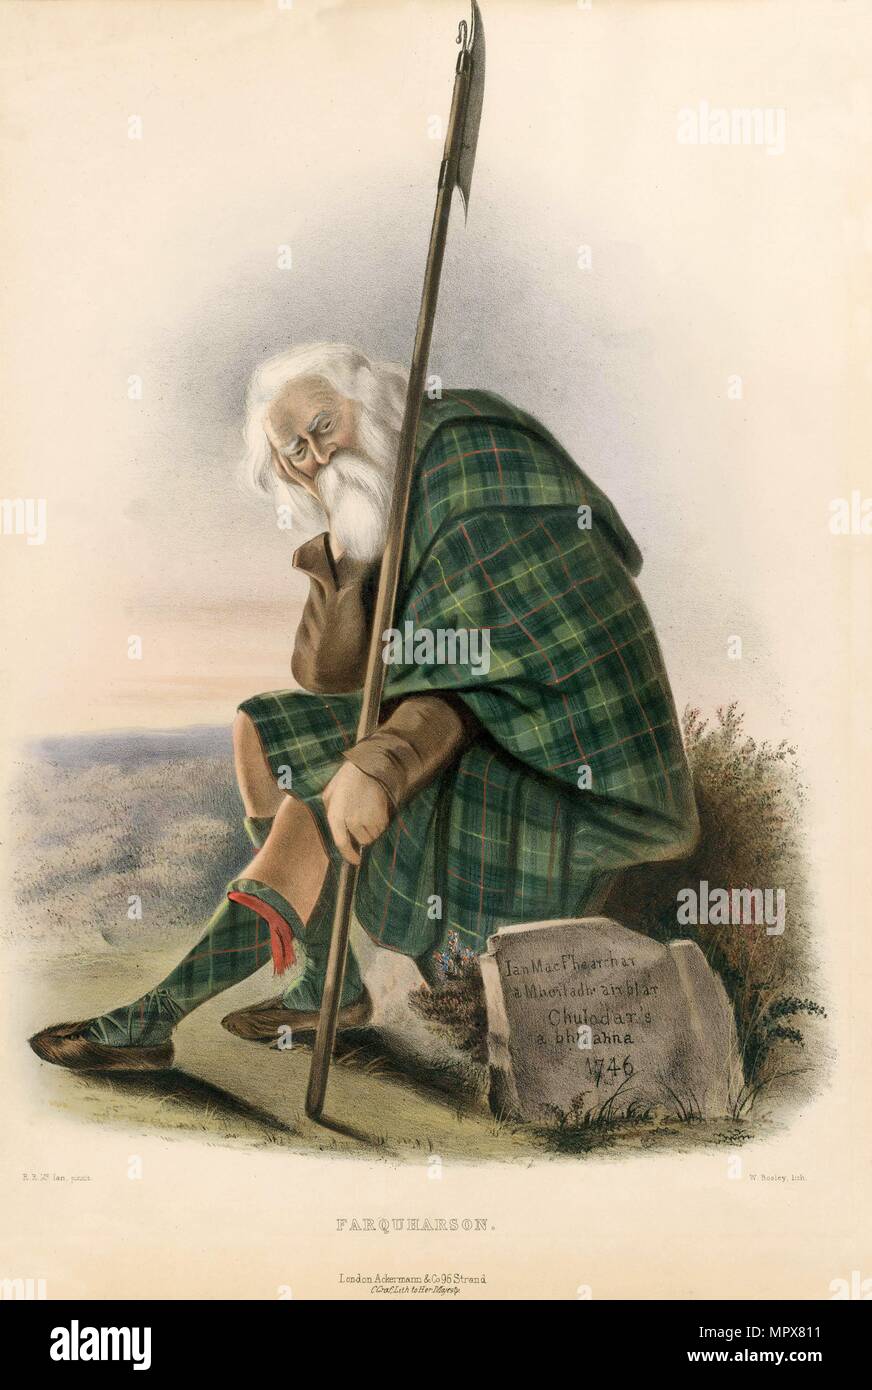 Farquharson, dal clan delle Highlands scozzesi, pub. 1845 (Litografia a colori) Foto Stock